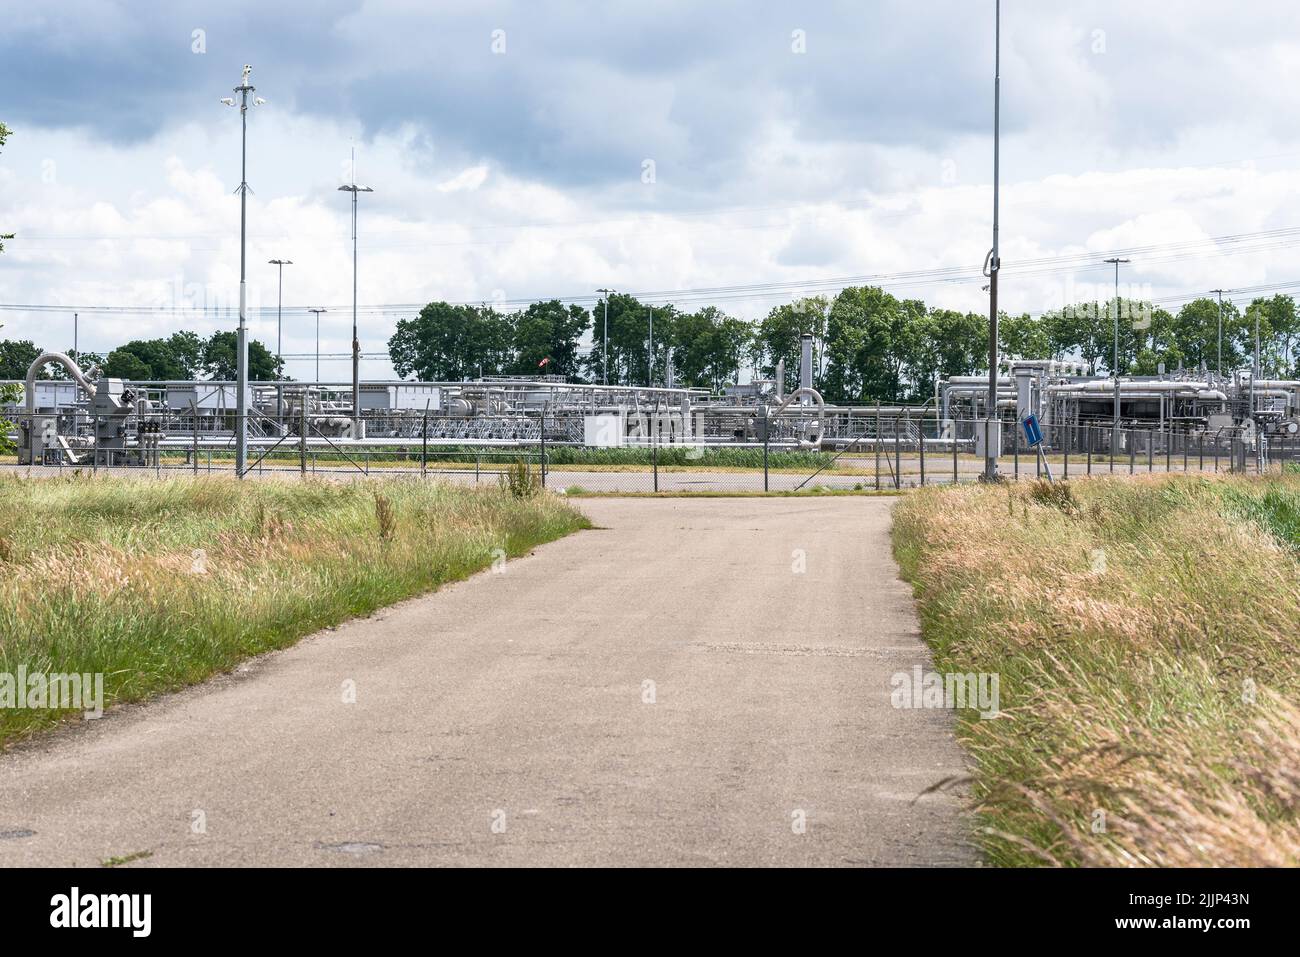 Têtes de puits, pipelines et vannes sur un site d'extraction de gaz naturel faisant partie du champ de gaz de Groningen par une journée d'été nuageuse Banque D'Images